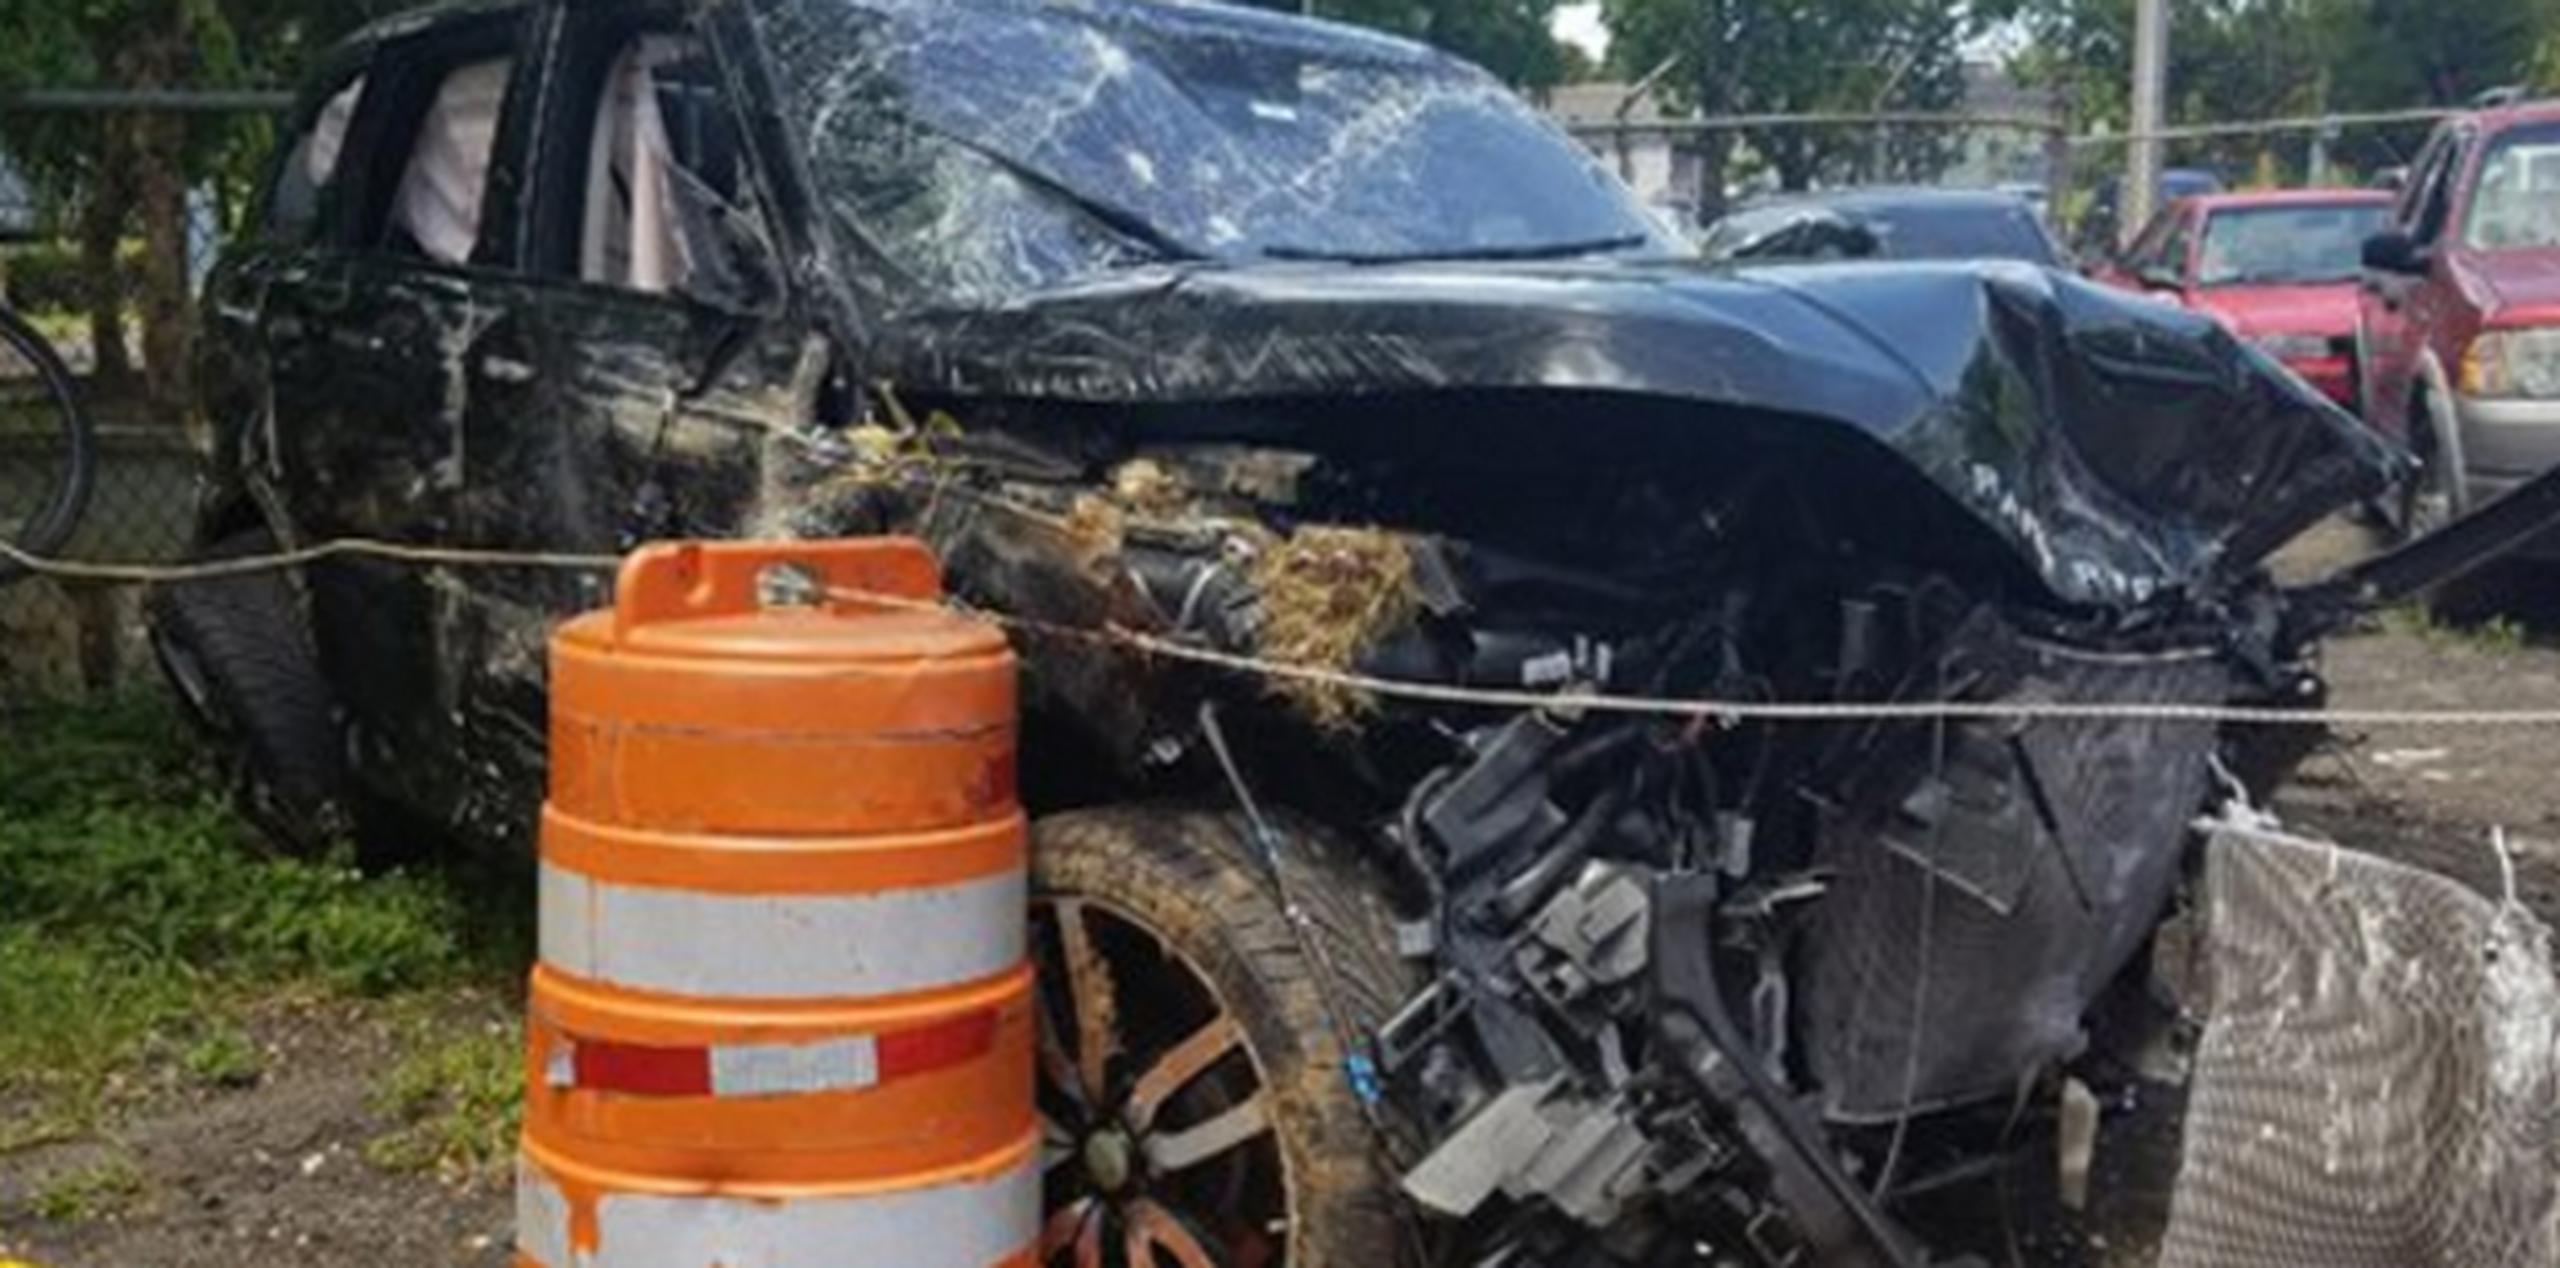 Jaime Ferrer Rivera, de 39 años, fue baleado el pasado viernes mientras conducía esta guagua Range Rover por Dorado. El accidente provocó la muerte de cinco miembros de una familia. (libni.sanjurjo@gfrmedia.com)